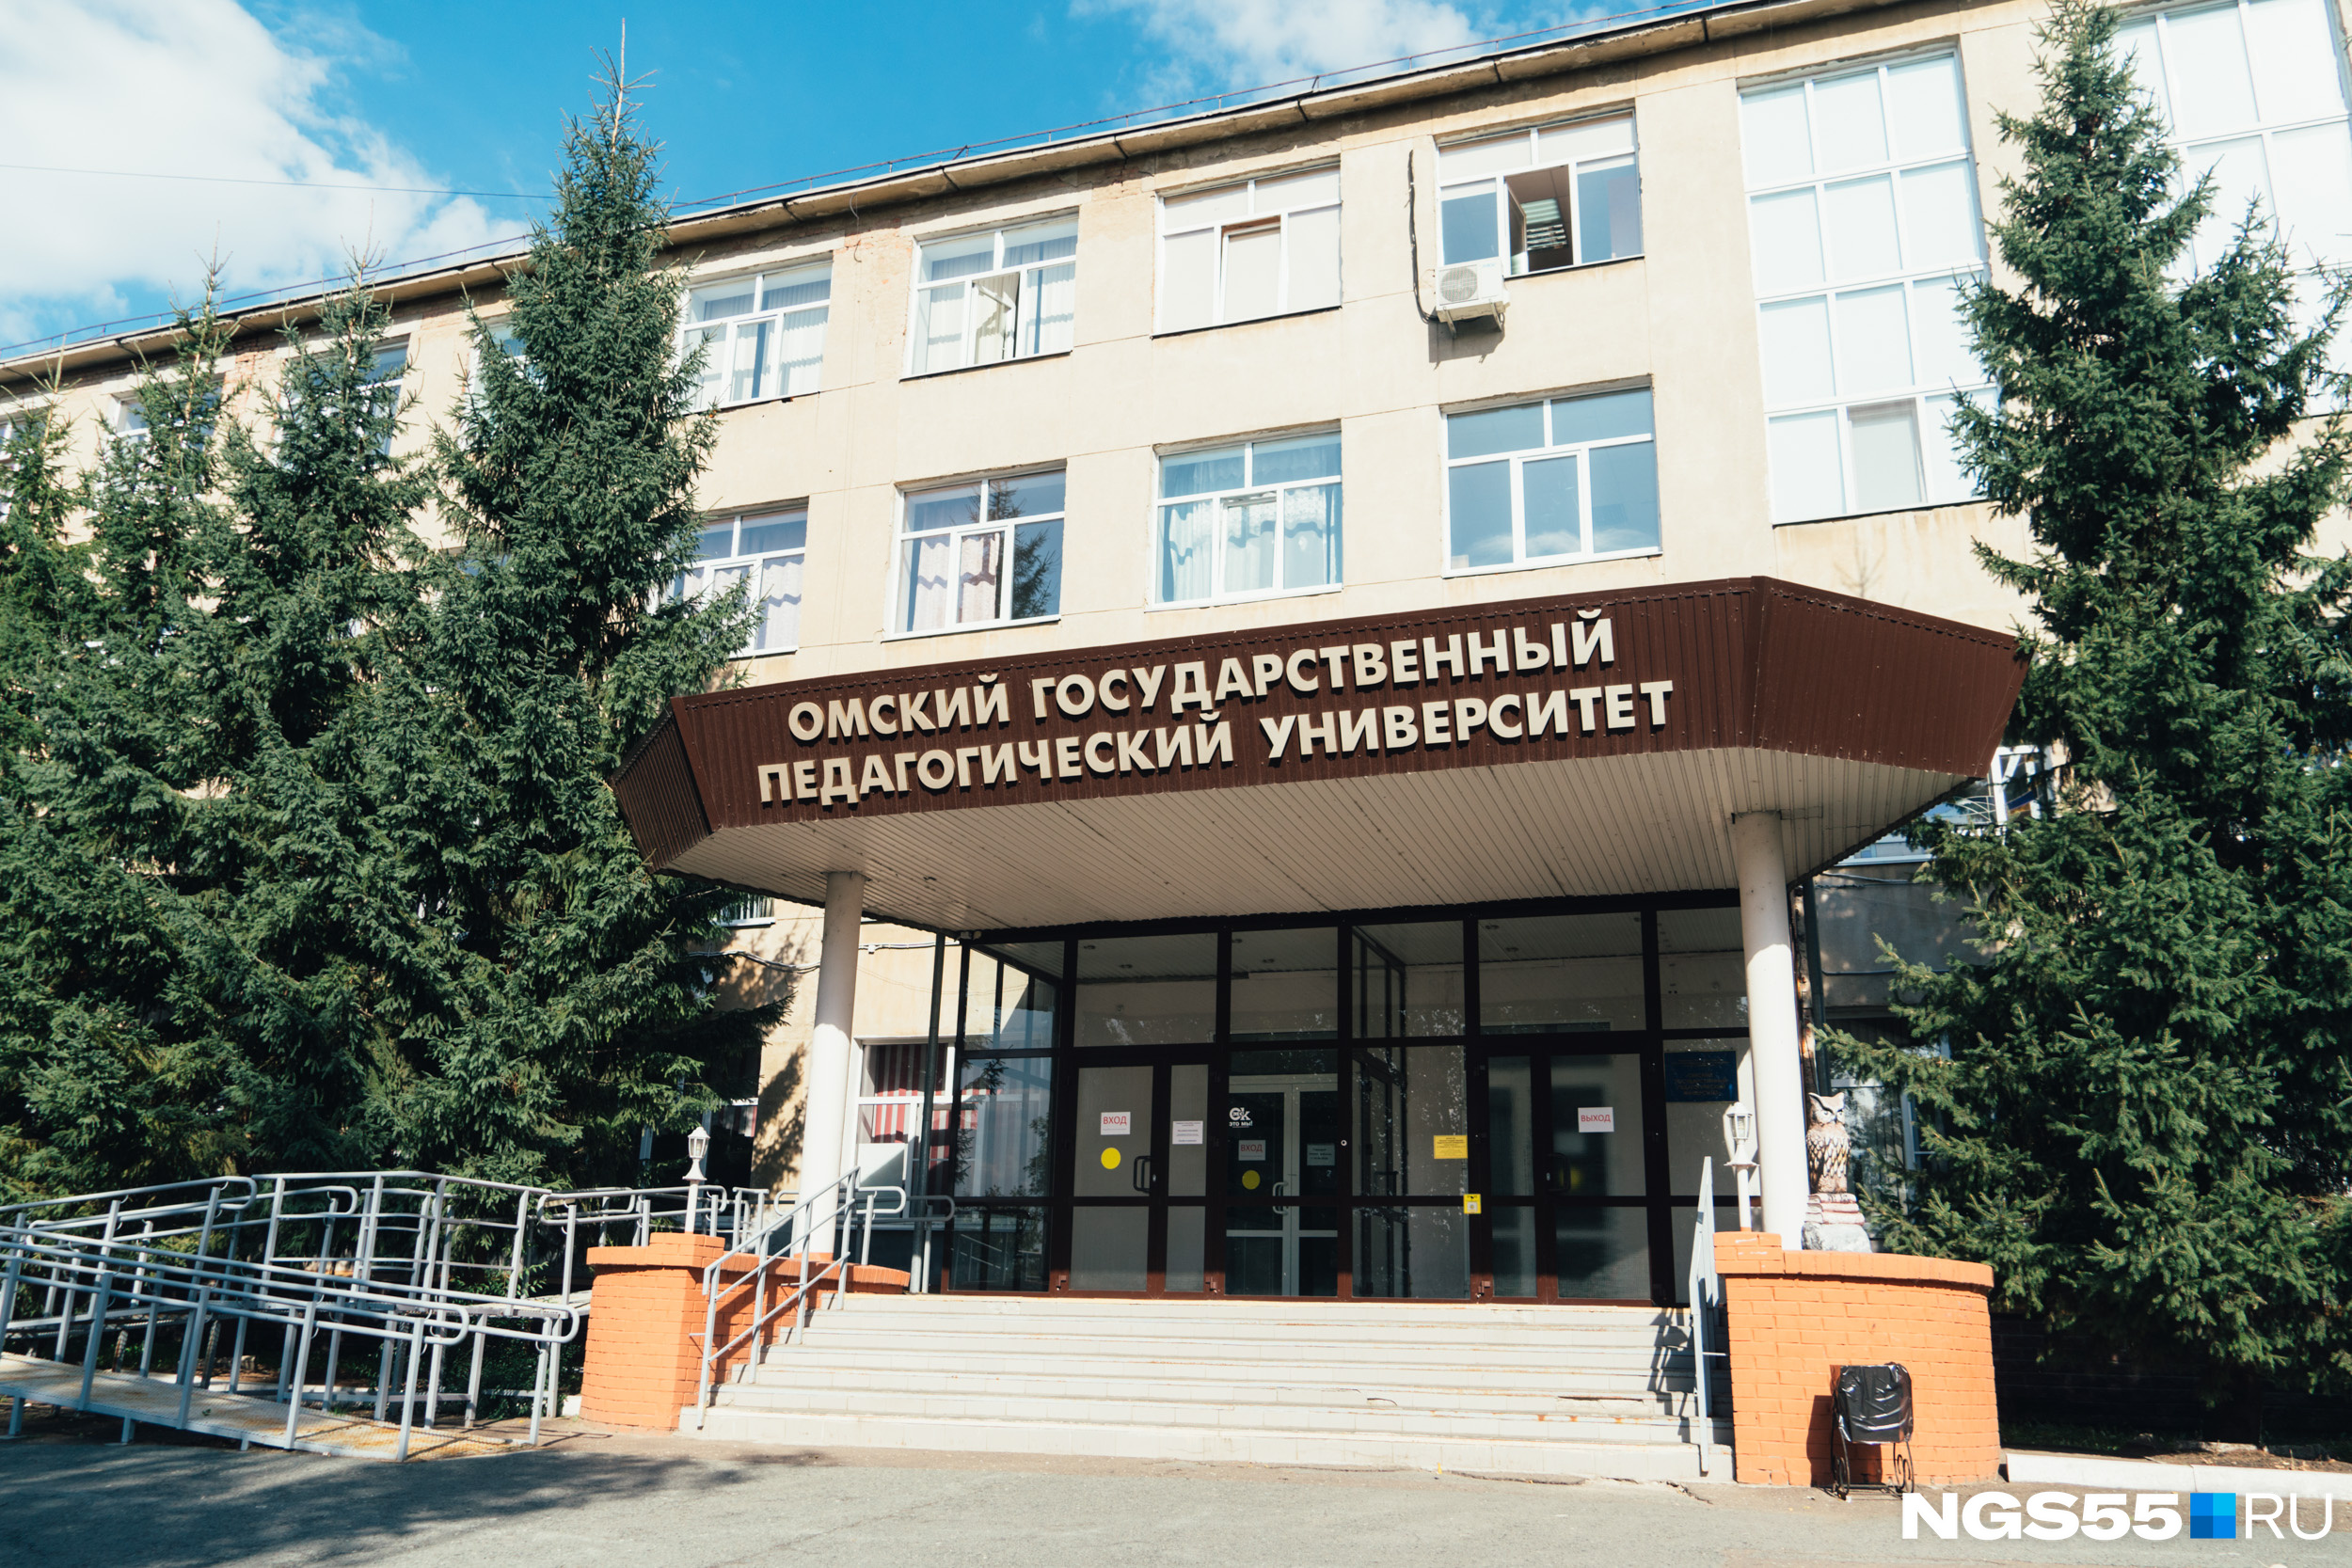 Год обучения на учителя в педагогическом университете стоит порядка 113 тысяч рублей